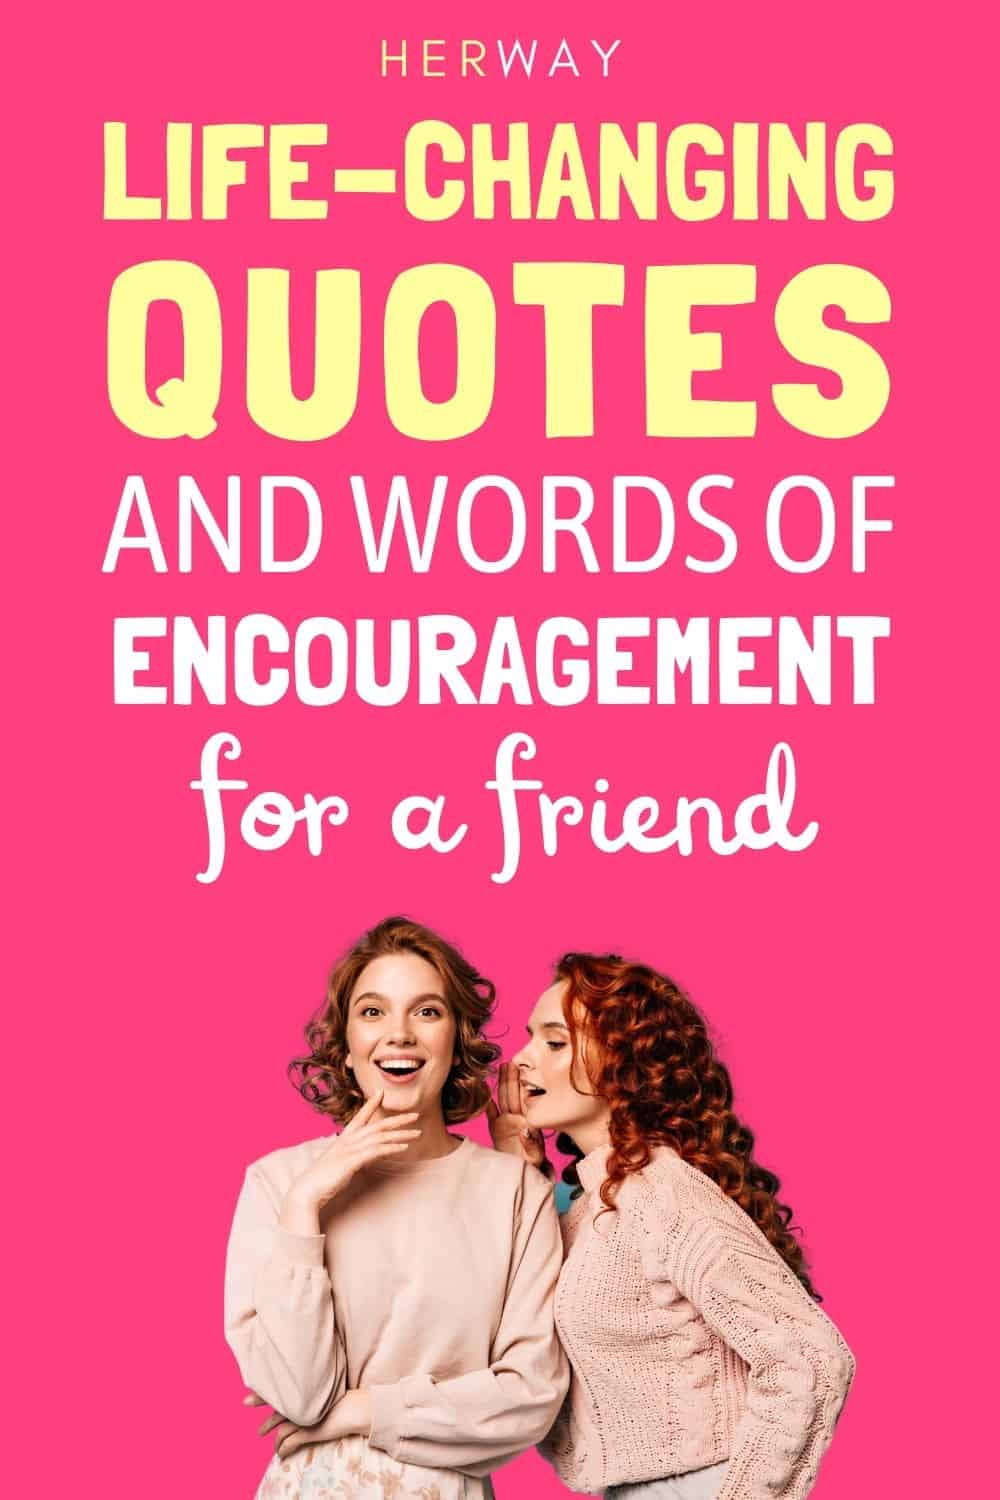 100 citazioni che cambiano la vita e parole di incoraggiamento per un amico Pinterest